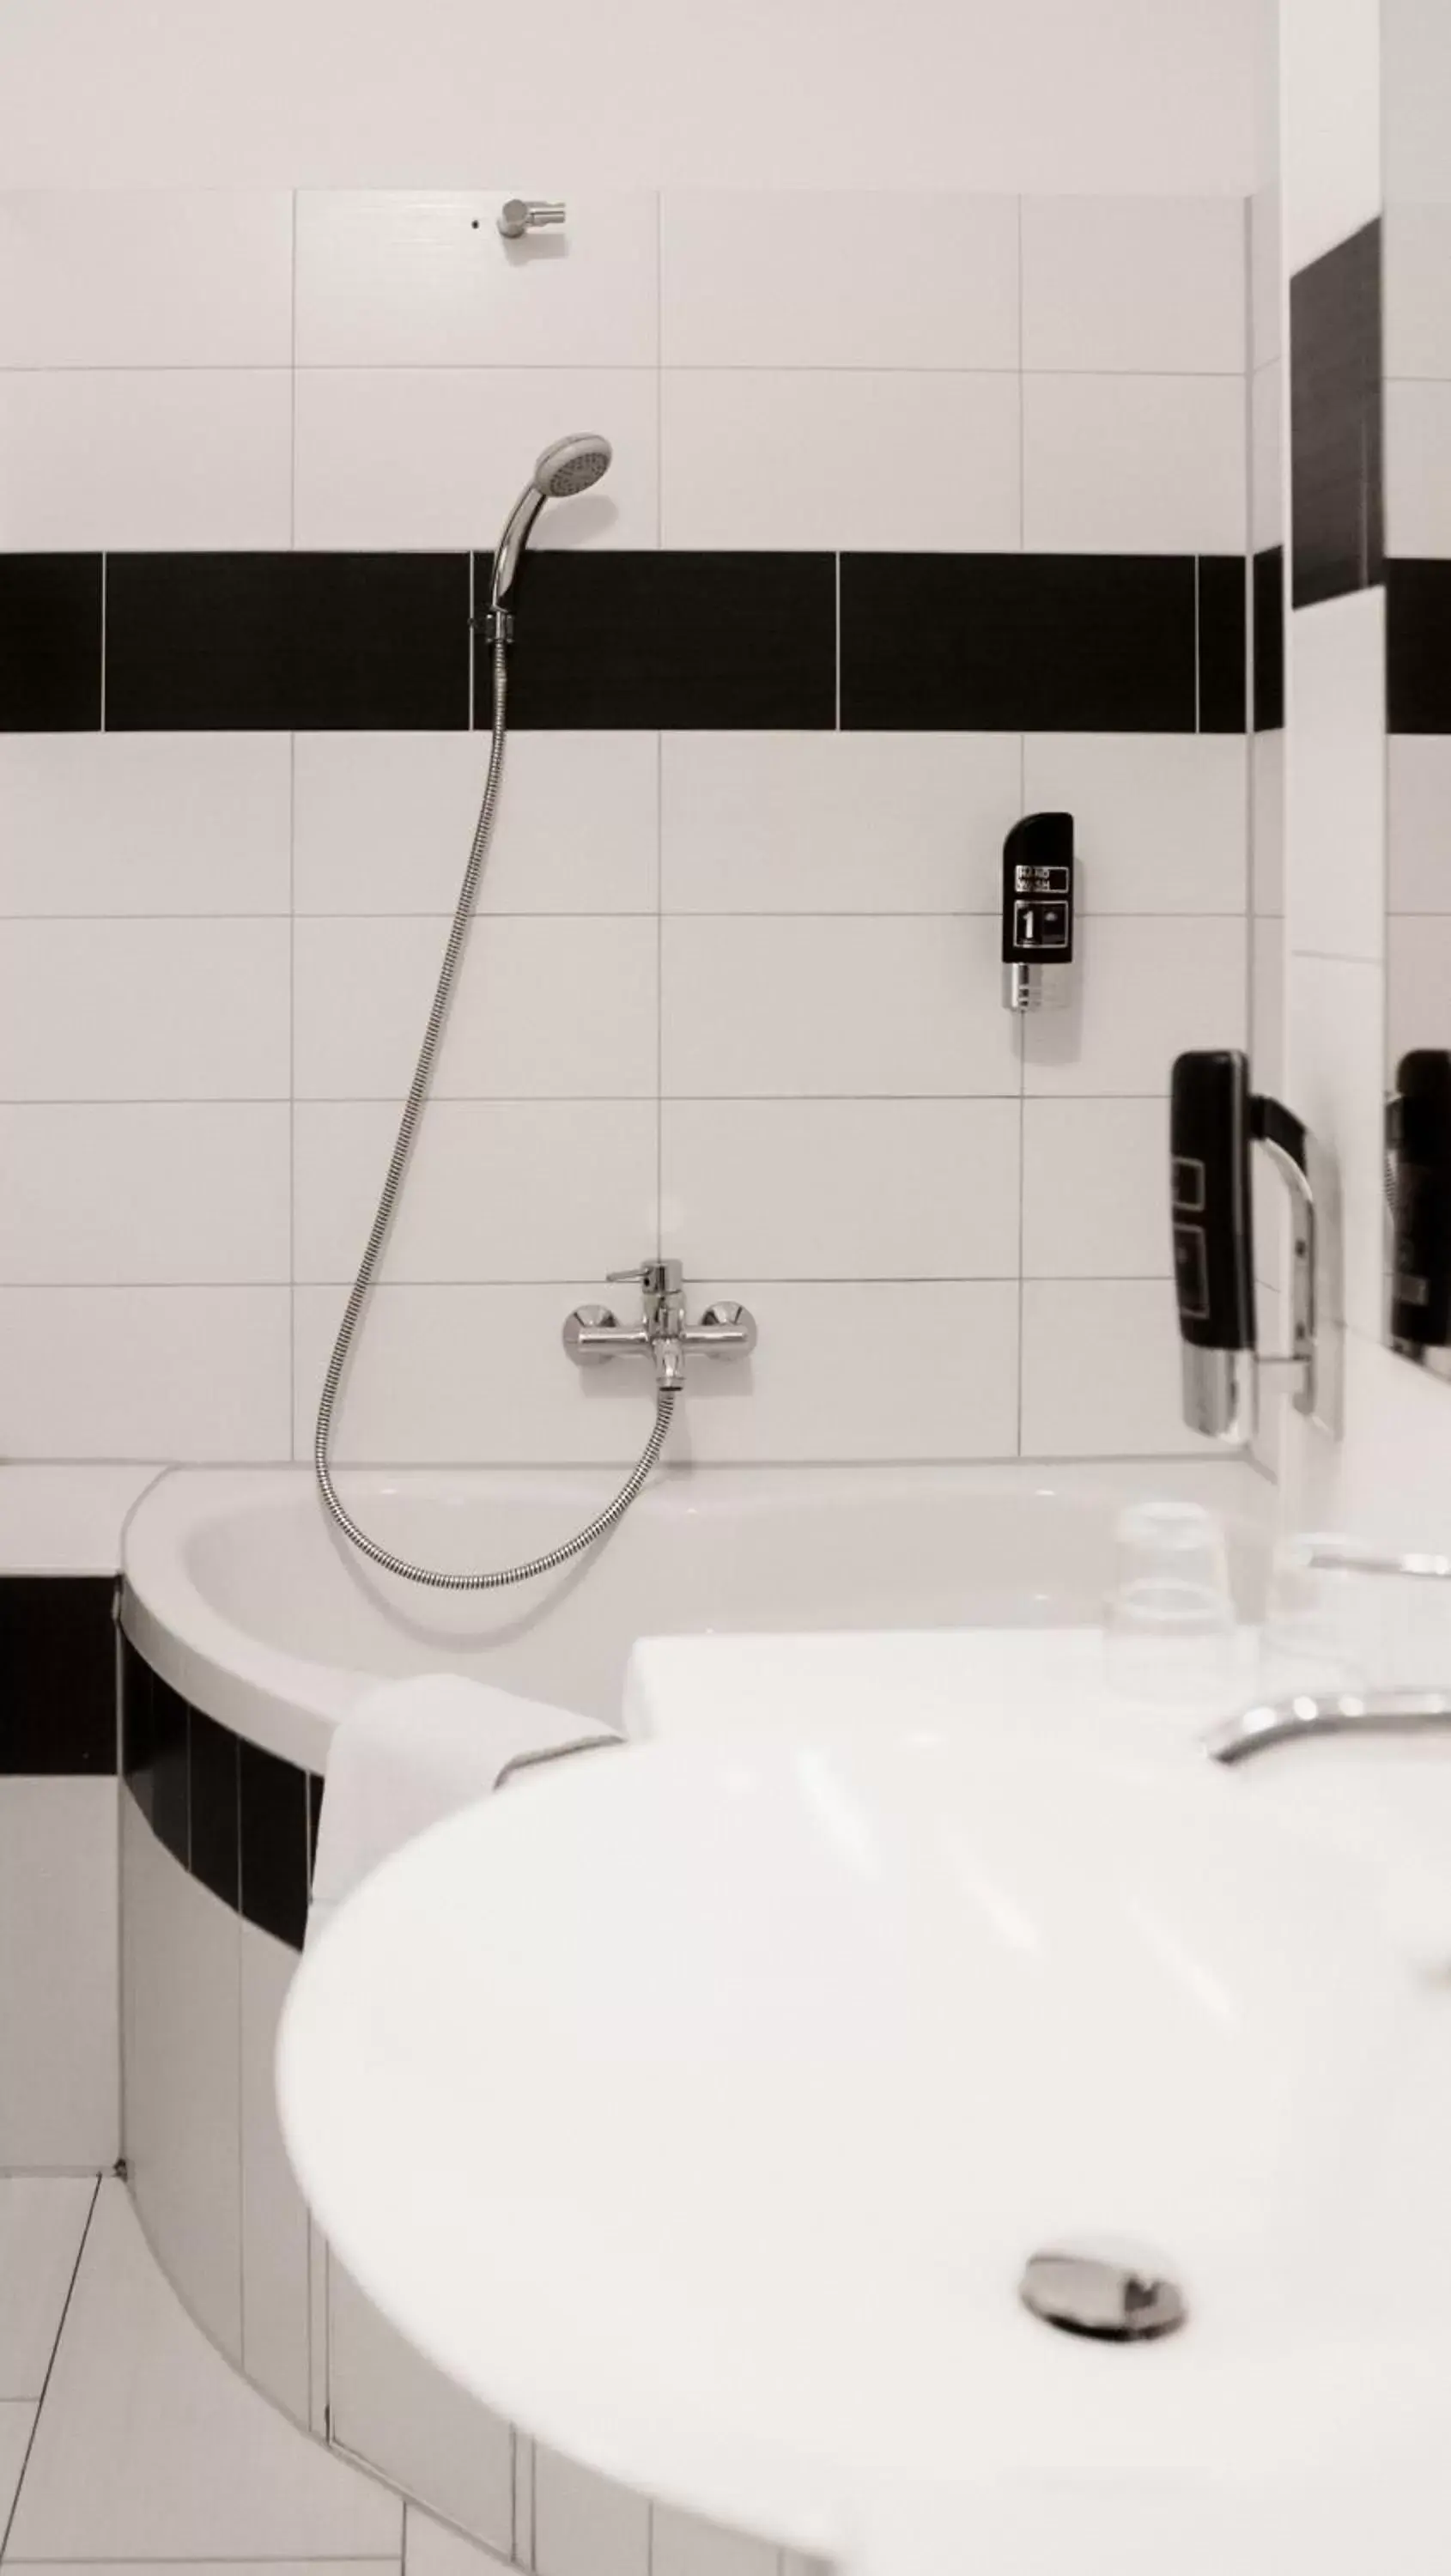 Bathroom in Hotel Prens Berlin